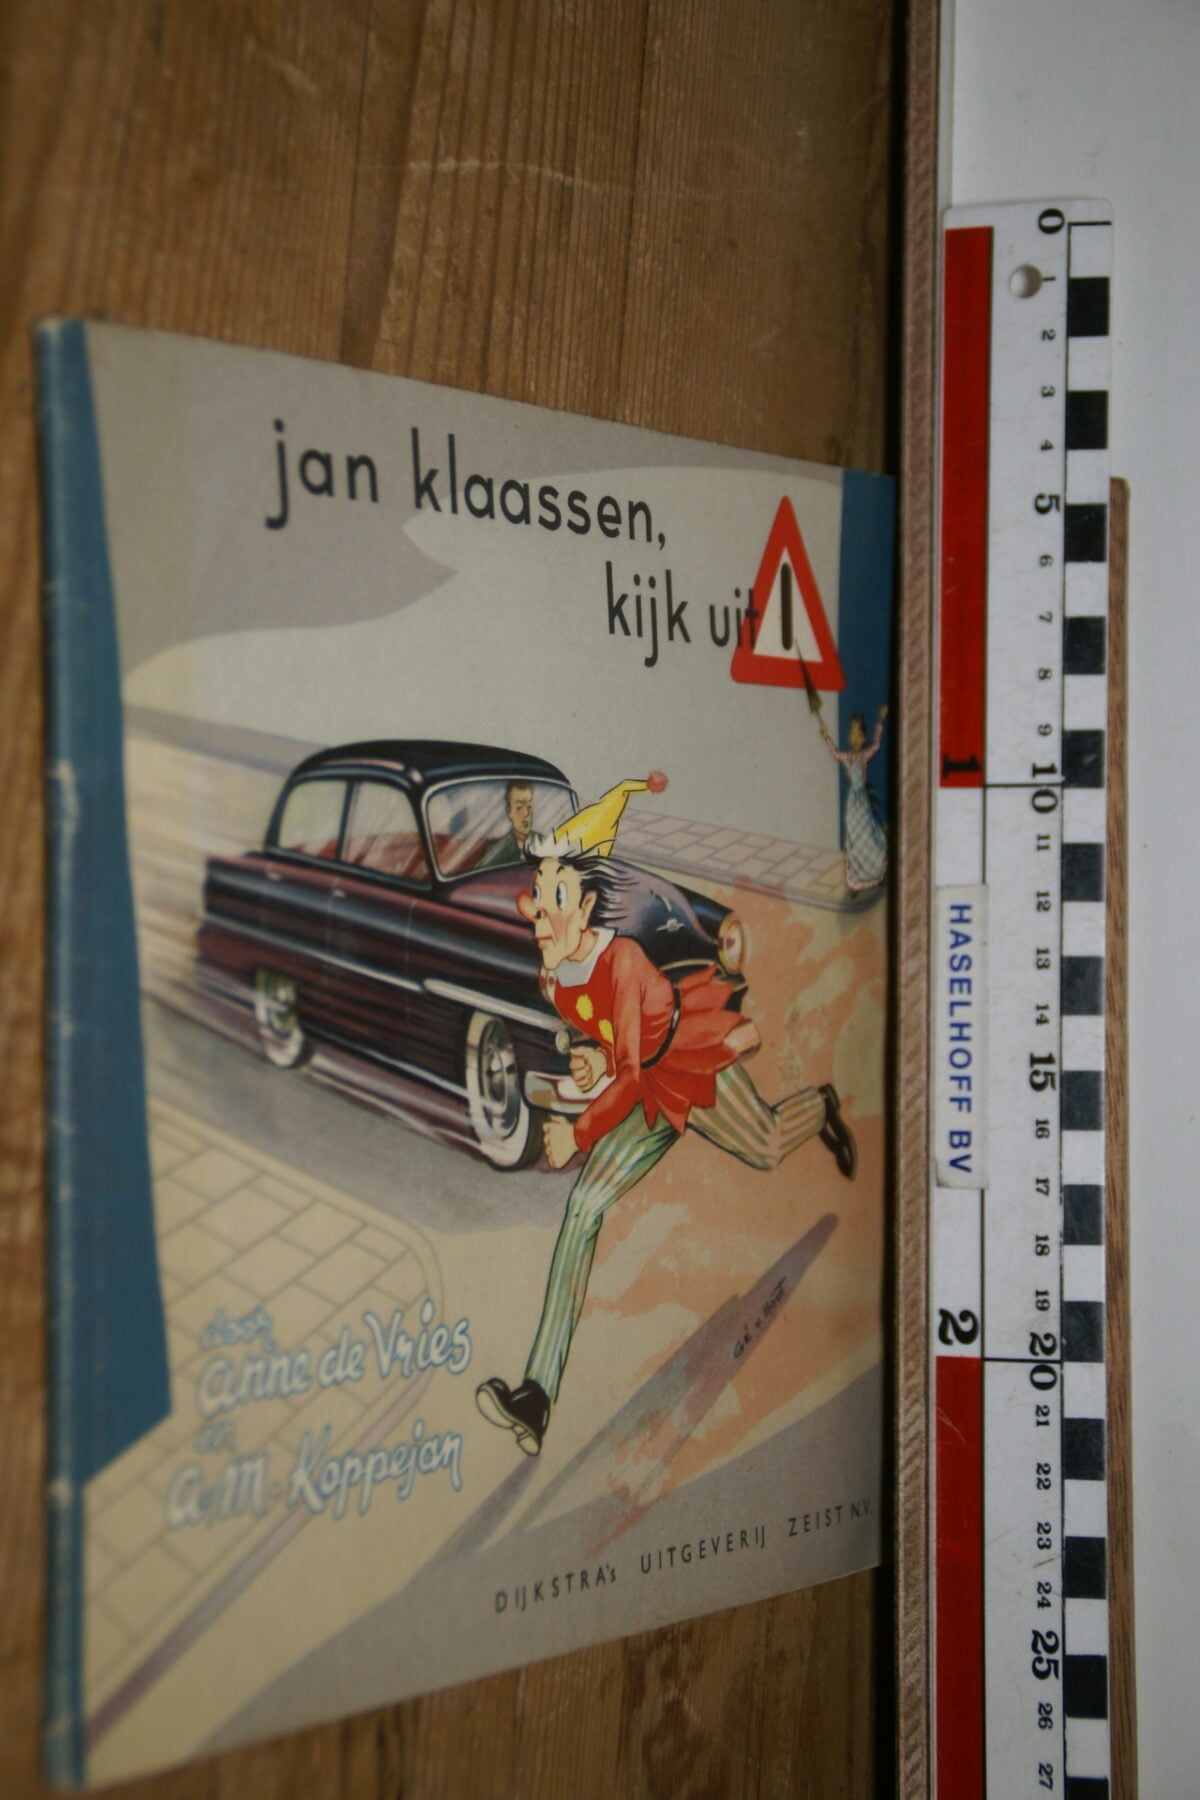 DSC02898 boek Jan Klaassen kijk uit!-a9d93901